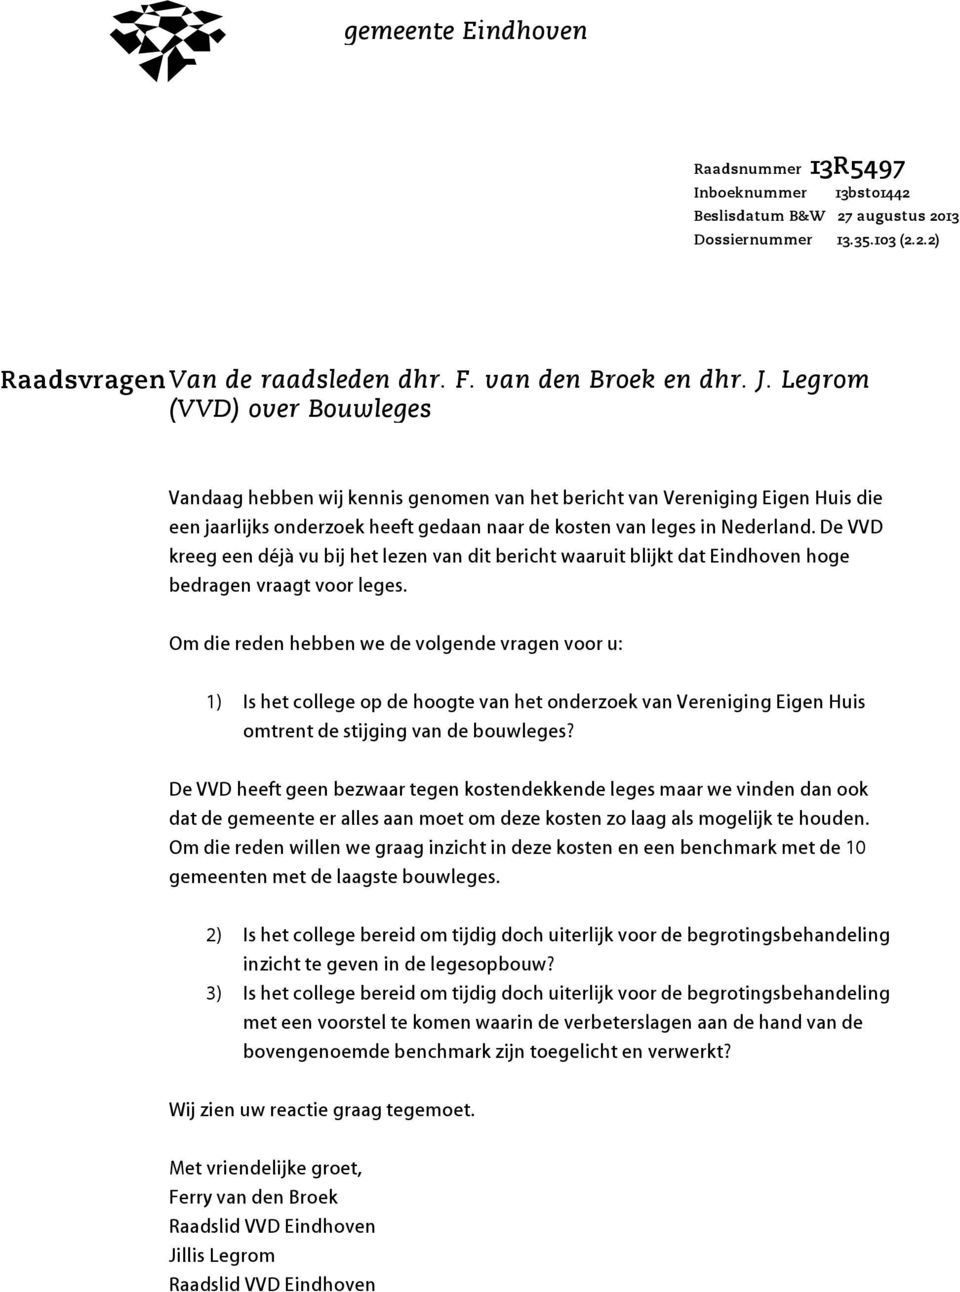 De VVD kreeg een déjà vu bij het lezen van dit bericht waaruit blijkt dat Eindhoven hoge bedragen vraagt voor leges.